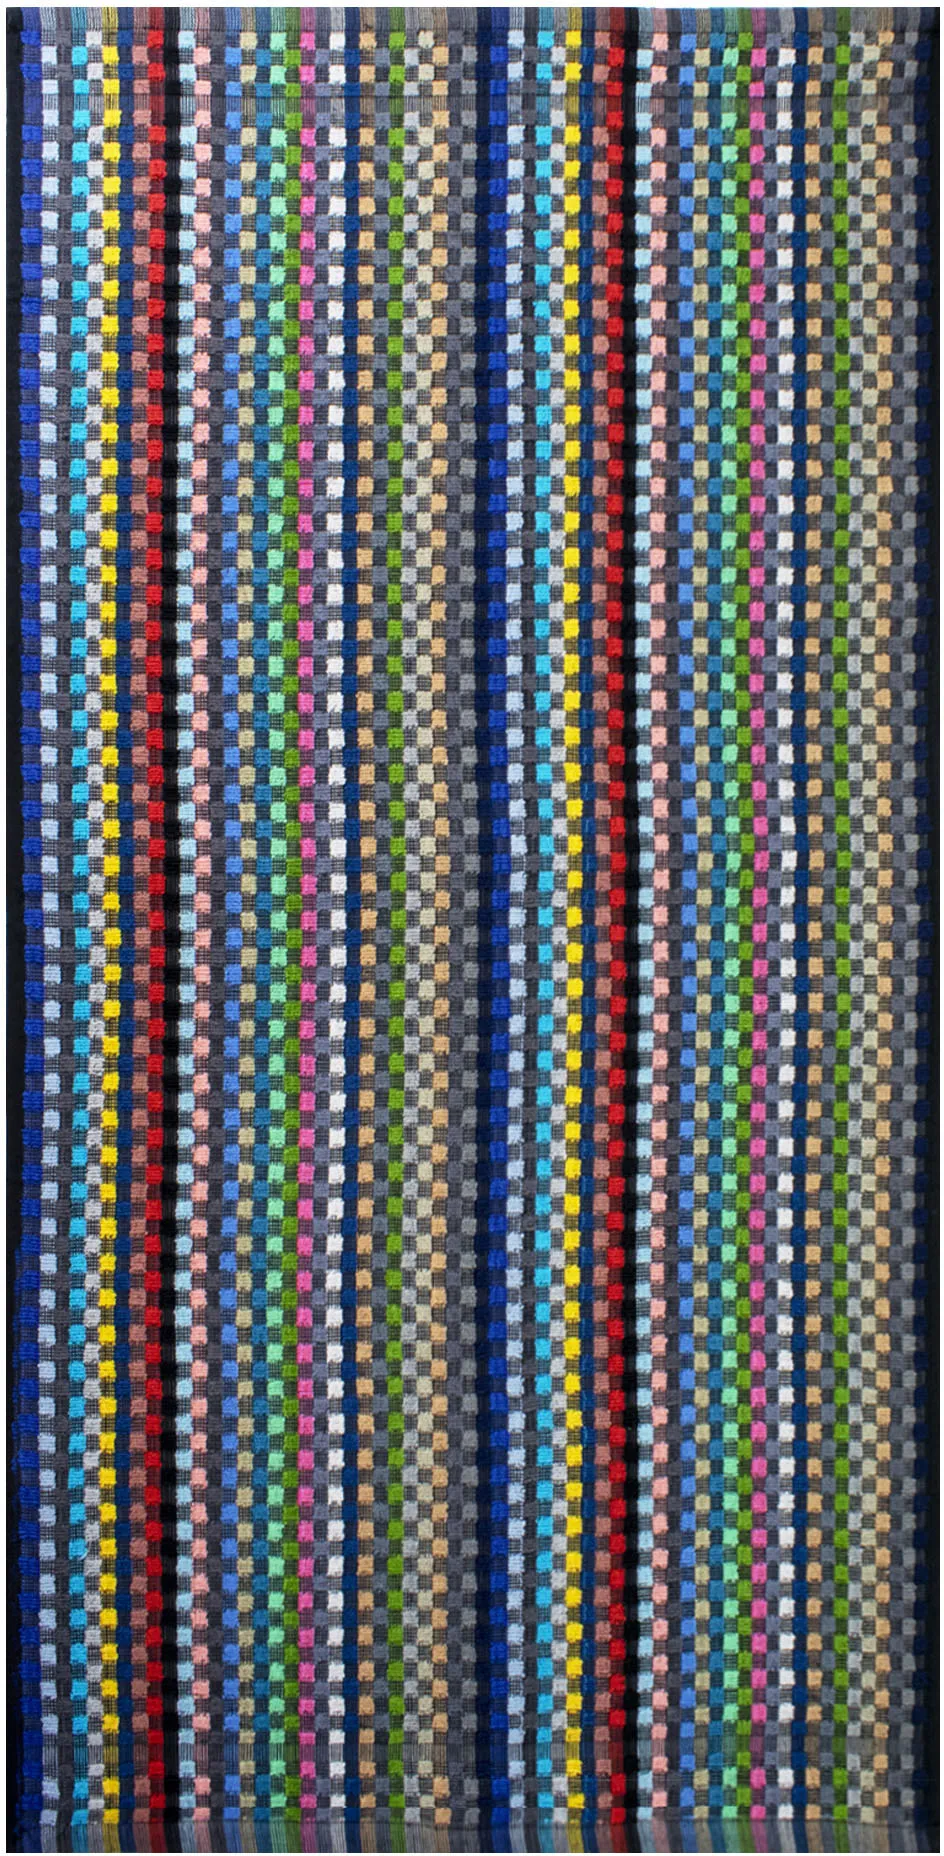 Delindo Lifestyle Handtuch »Frottier Grubentuch, 50x90 cm«, (5 St.), Multicolor kariert aus Baumwolle Delindo Lifestyle multicolor